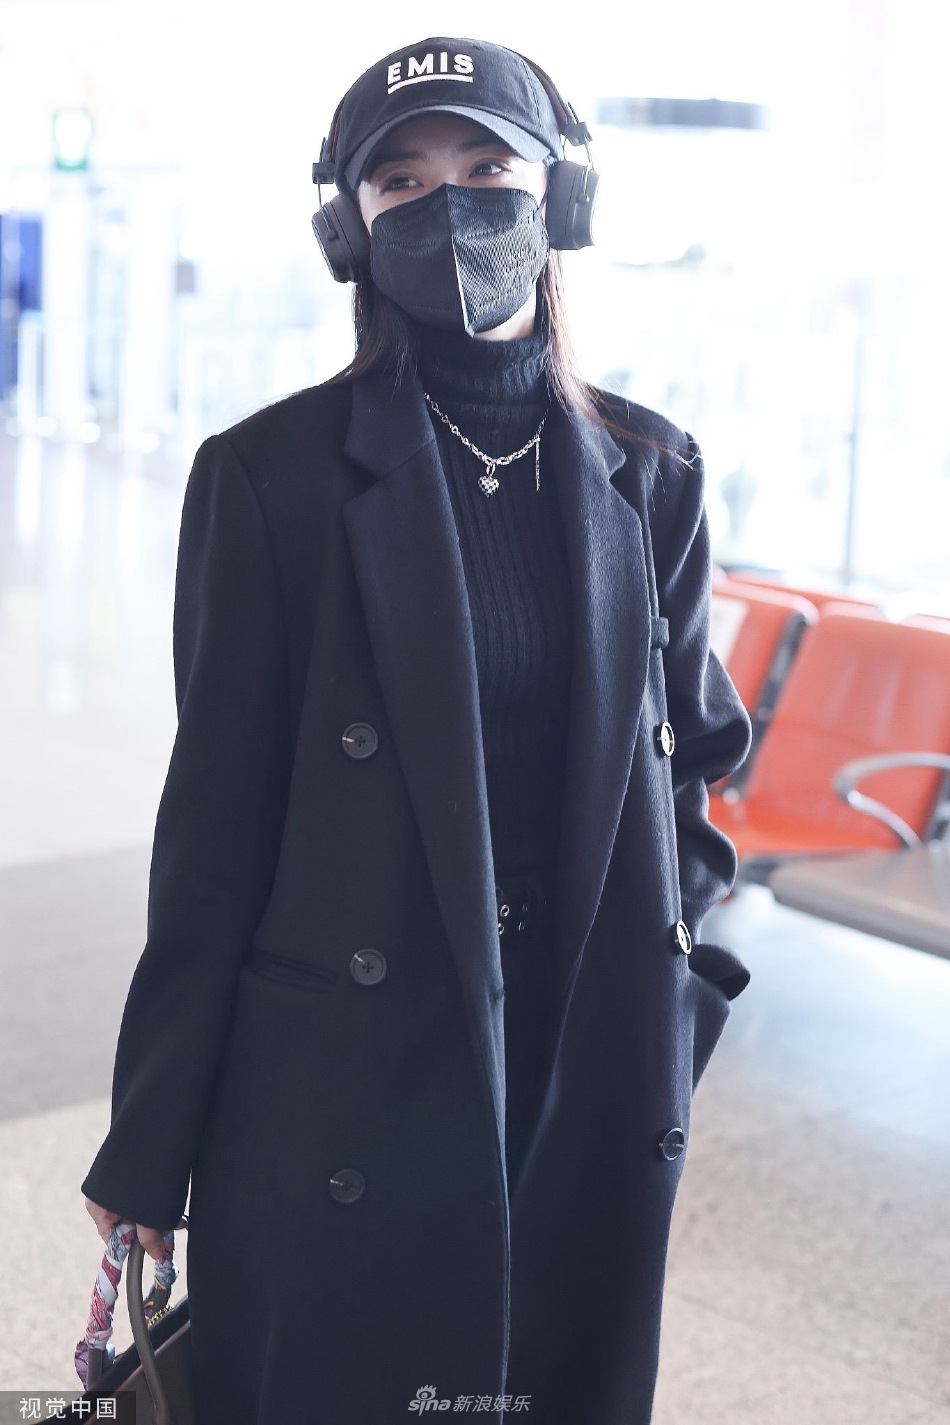 徐璐黑色鸭舌帽搭配西装造型现身机场 边走边给粉丝签名